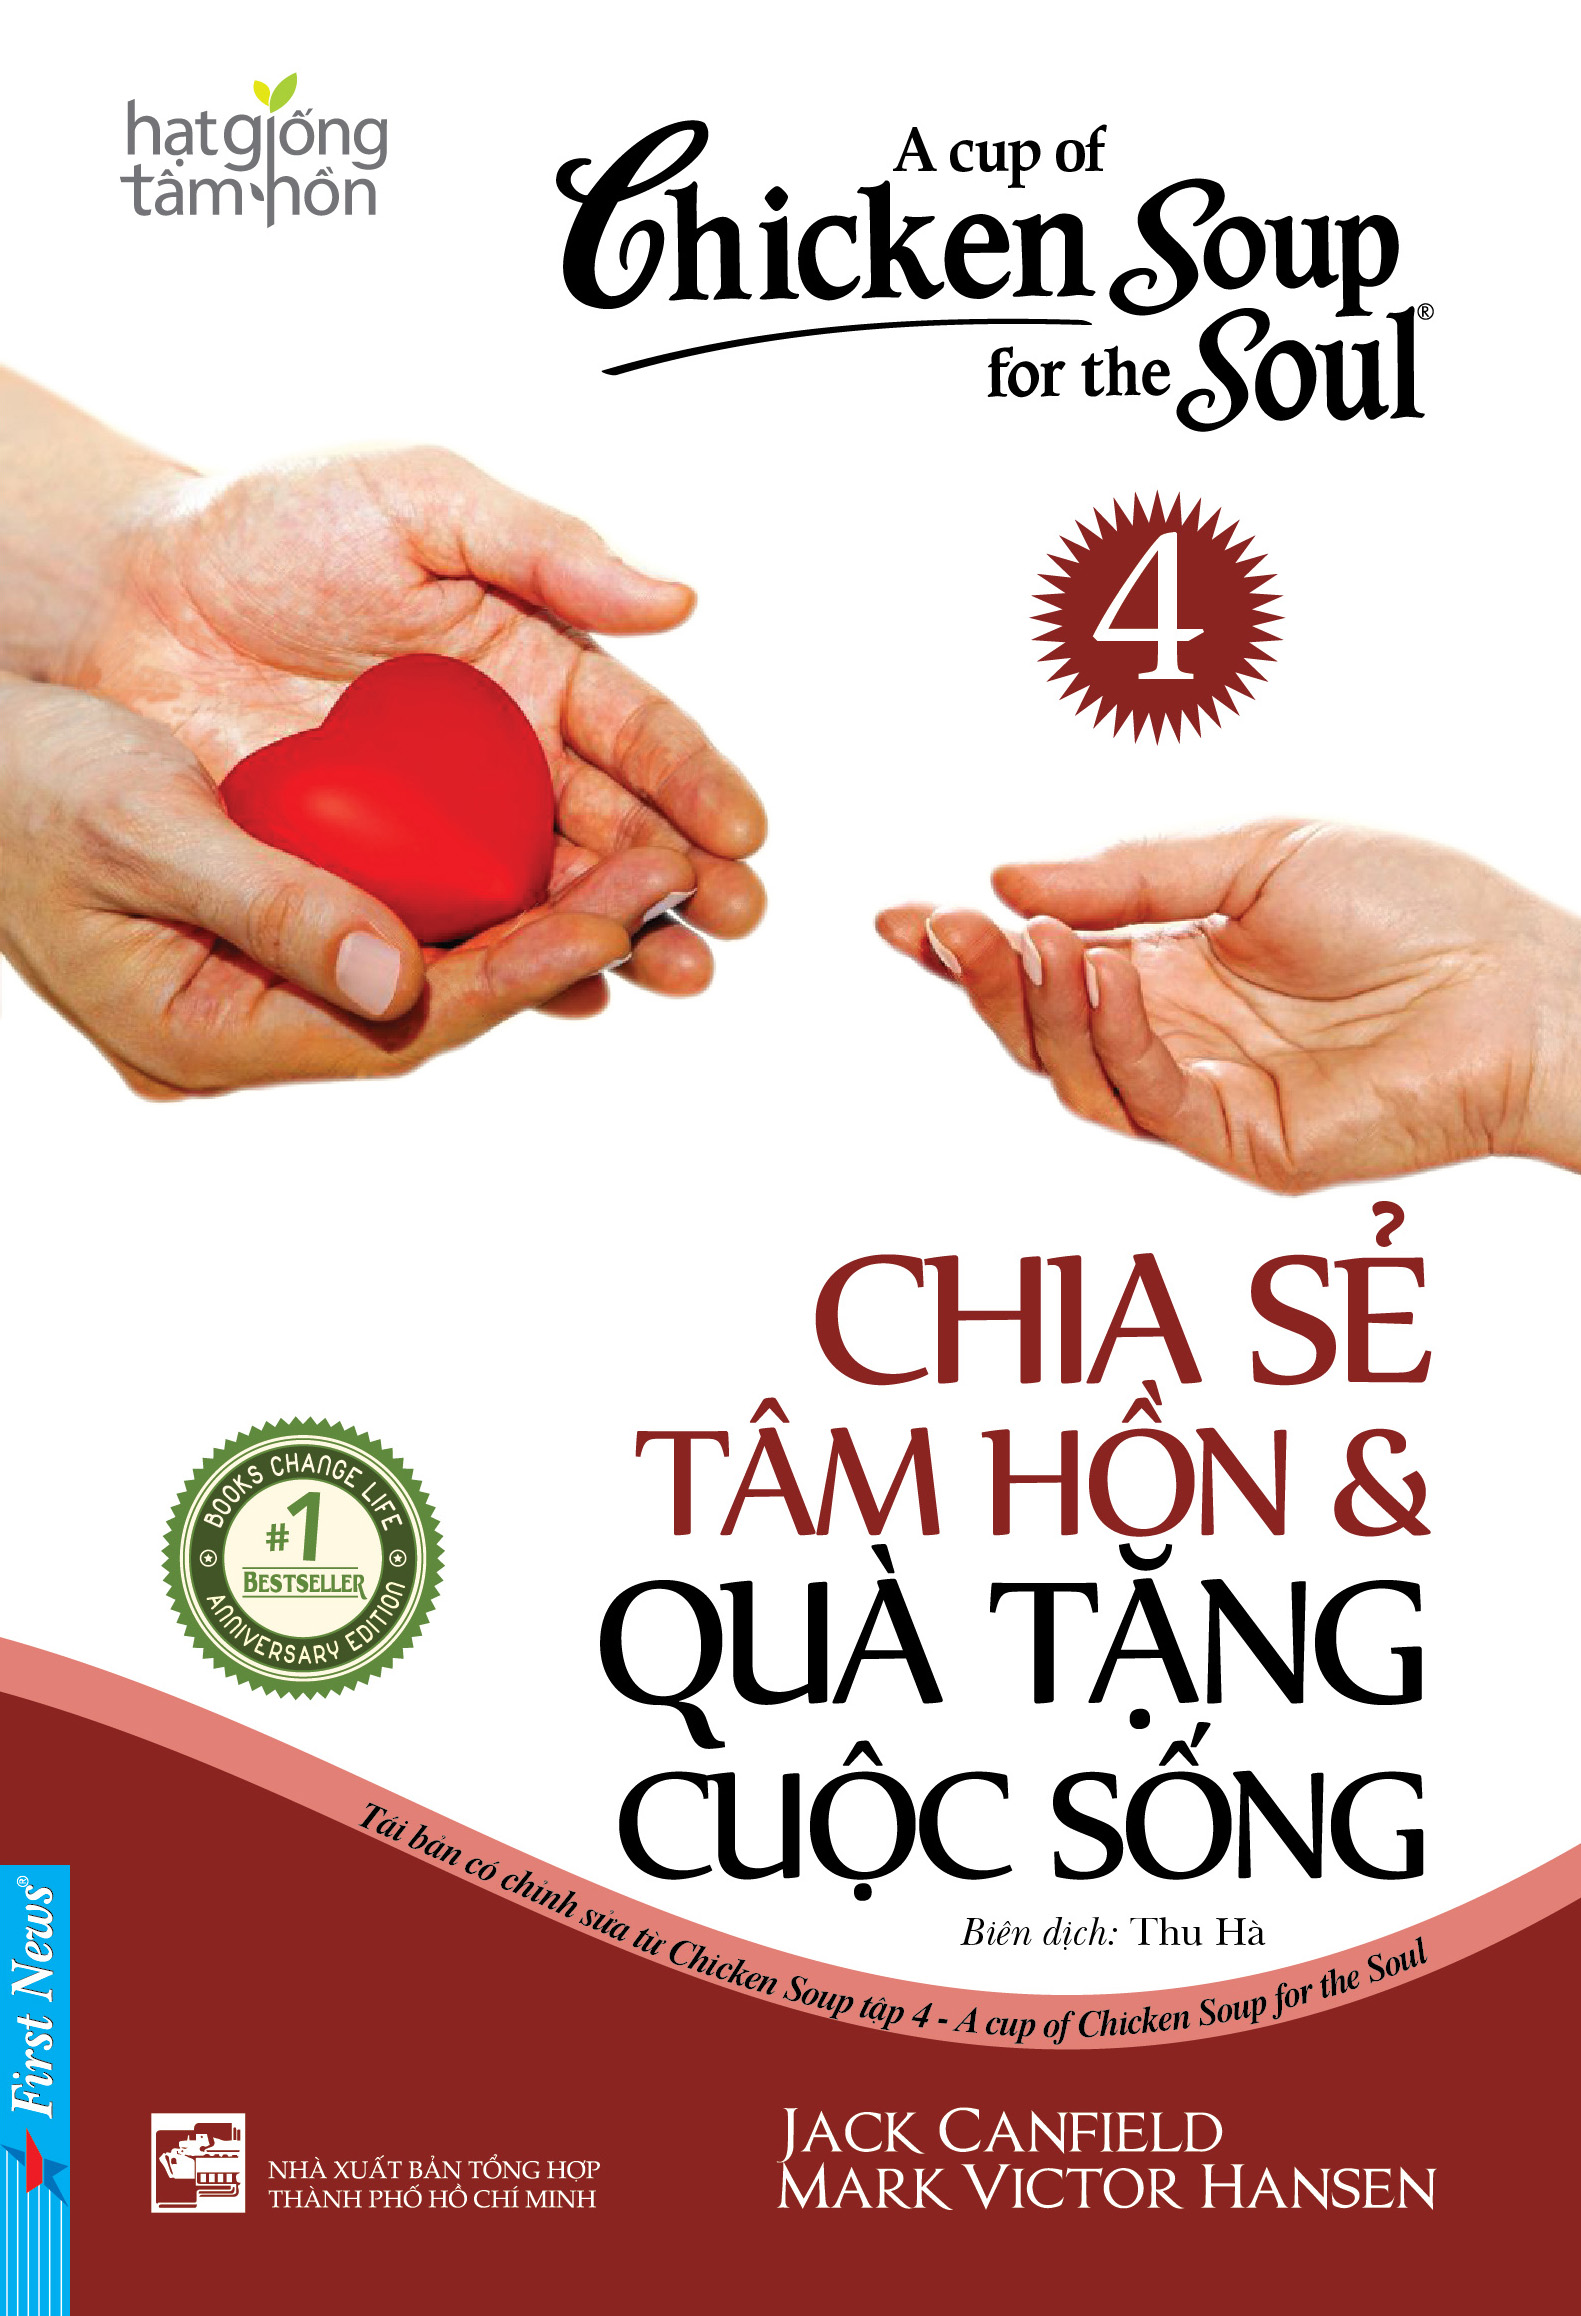 Hạt Giống Tâm Hồn - Chicken Soup For The Soul 4 - Chia Sẻ Tâm Hồn Và Quà Tặng Cuộc Sống